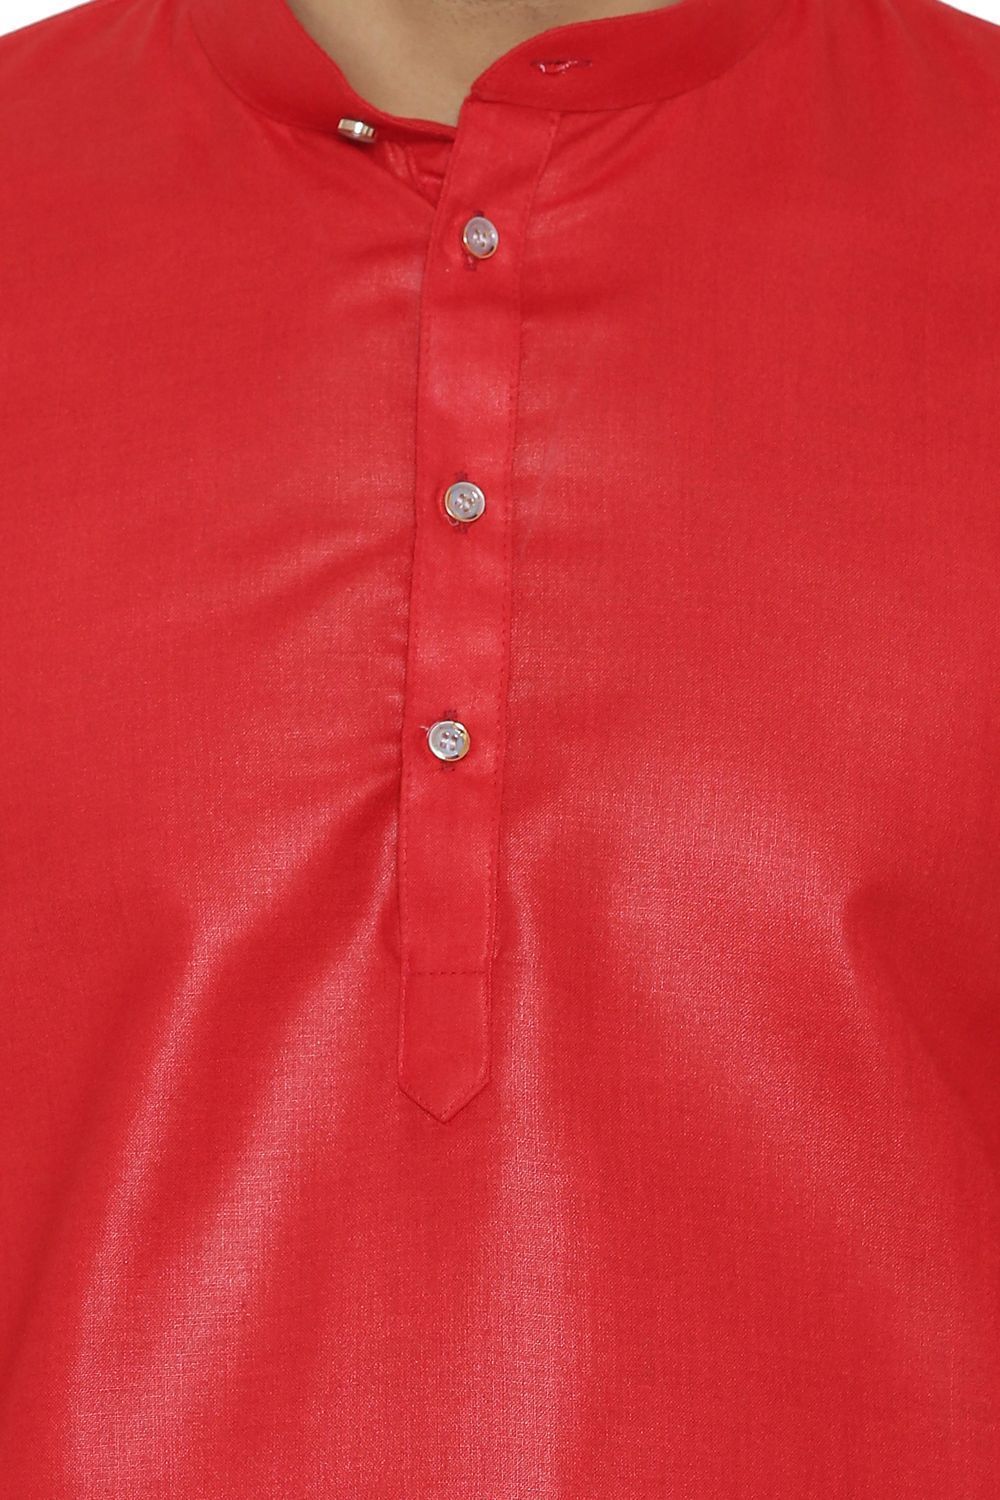 Cotton Silk Blend Red Kurta Shirt